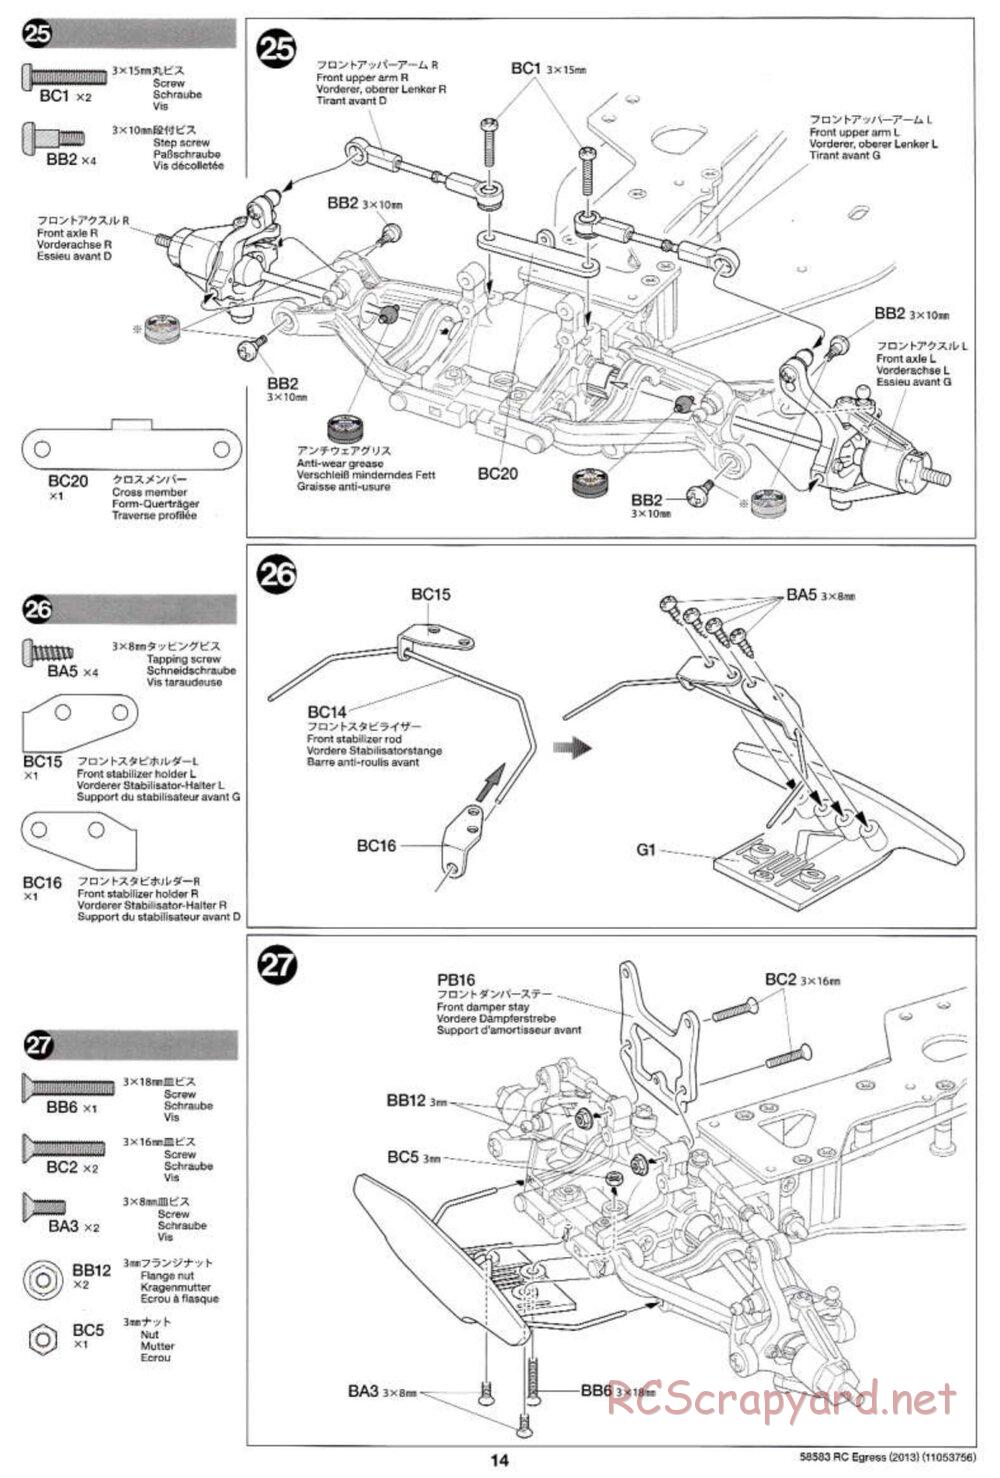 Tamiya - Egress 2013 - AV Chassis - Manual - Page 14